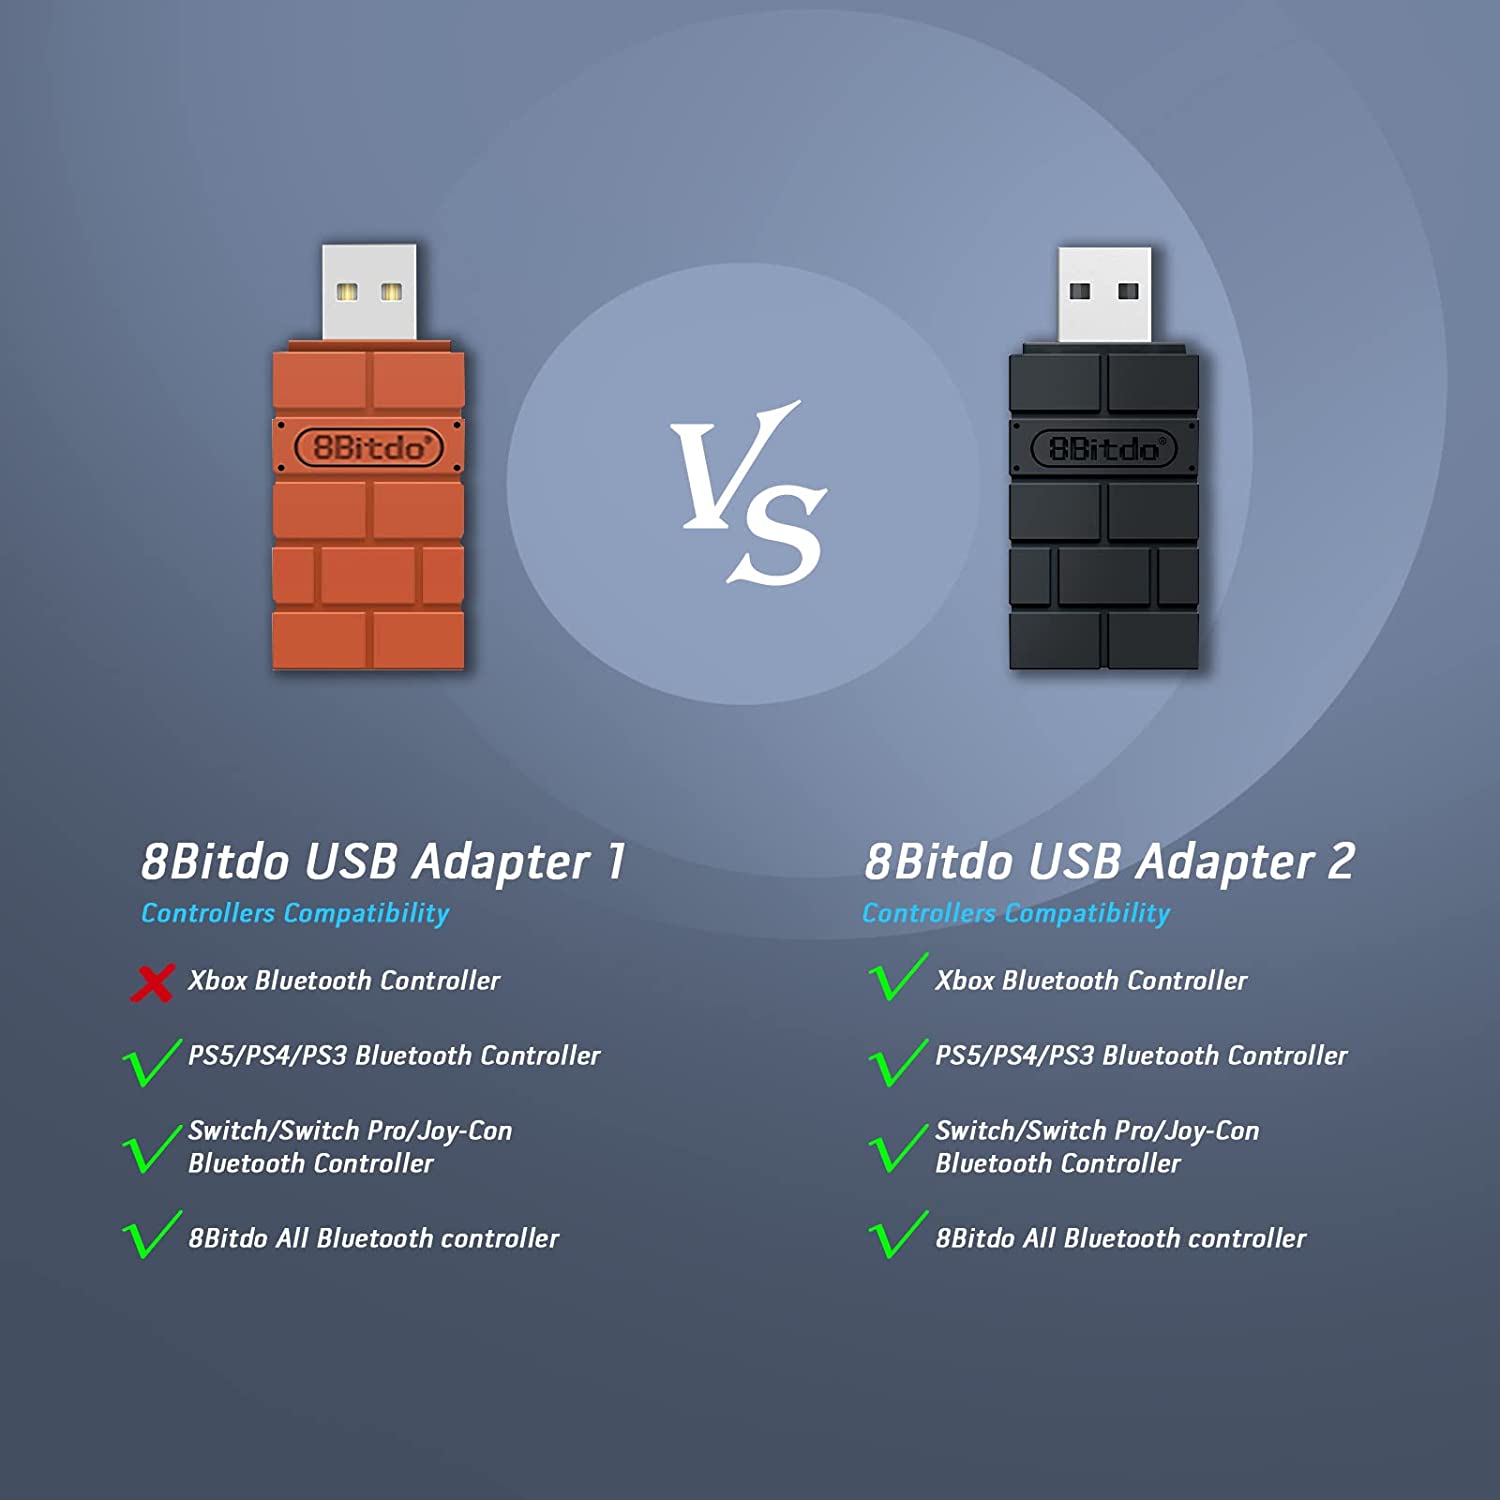 8BitDo USB Wireless Adapter 2 Switch/Windows/Rasberry Pi